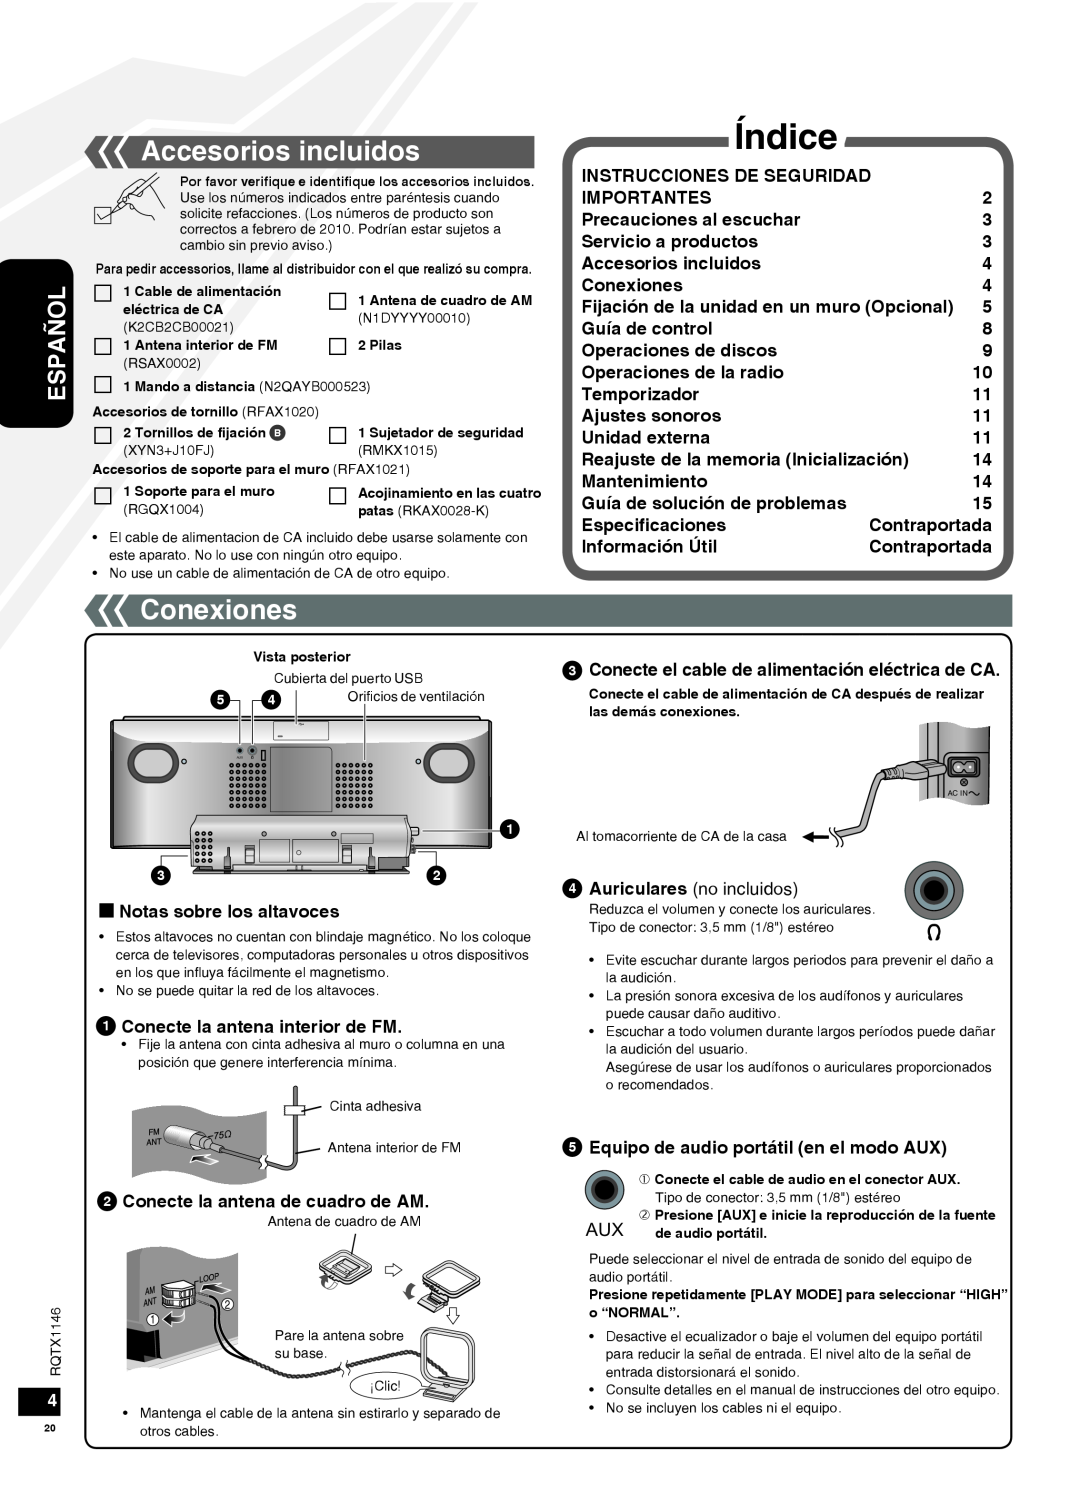 Panasonic SC-HC40 Índice, Accesorios incluidos, Conexiones, g Notas sobre los altavoces, Conecte la antena interior de FM 